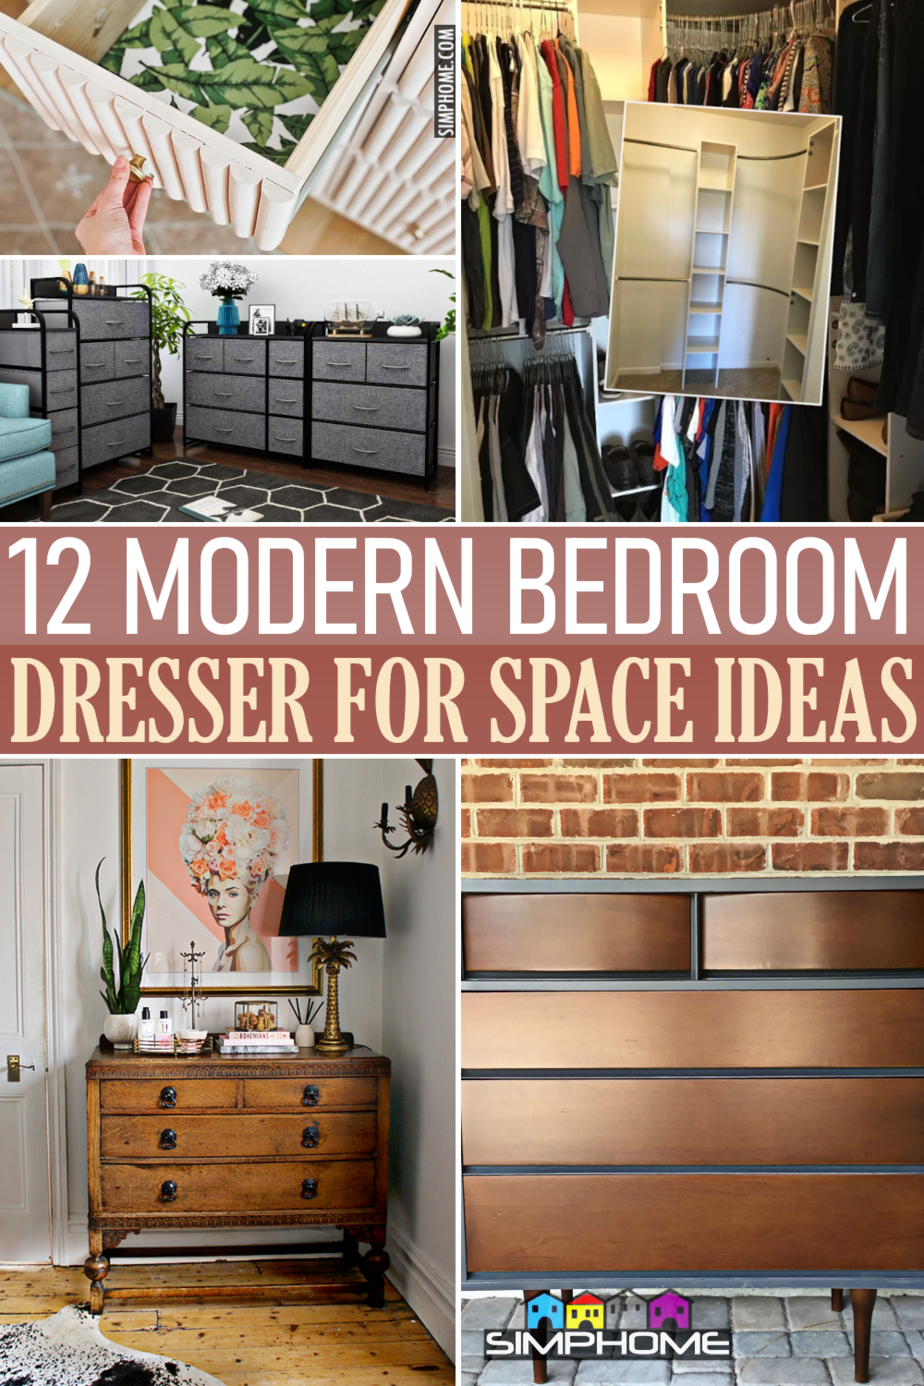 12 Modern Dresser Ideas via SIMPHOME.COMFeatured